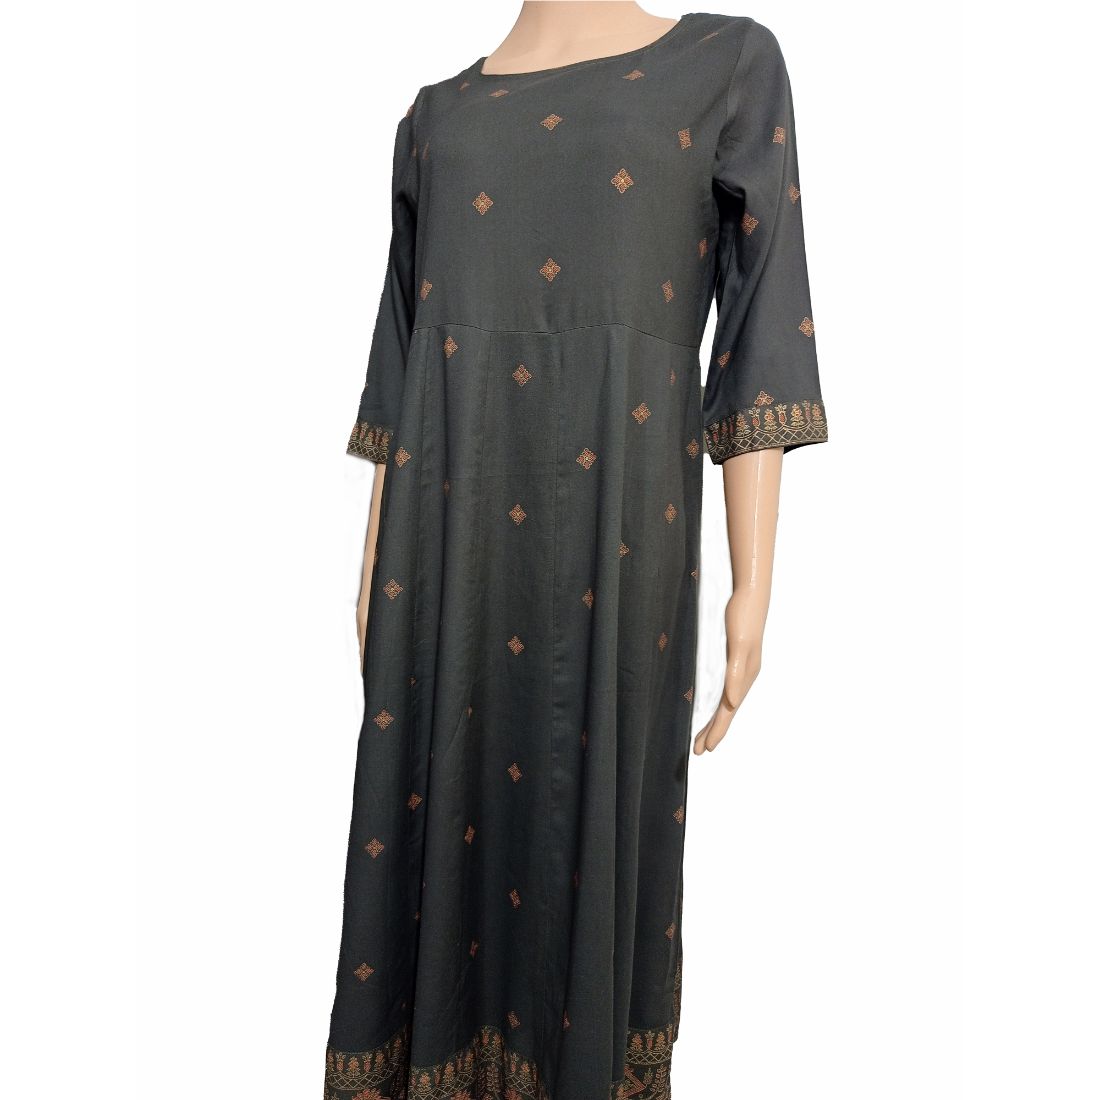 Brown Color Long Kurta with Beautiful Jaipuri Print – GOODSYOGA